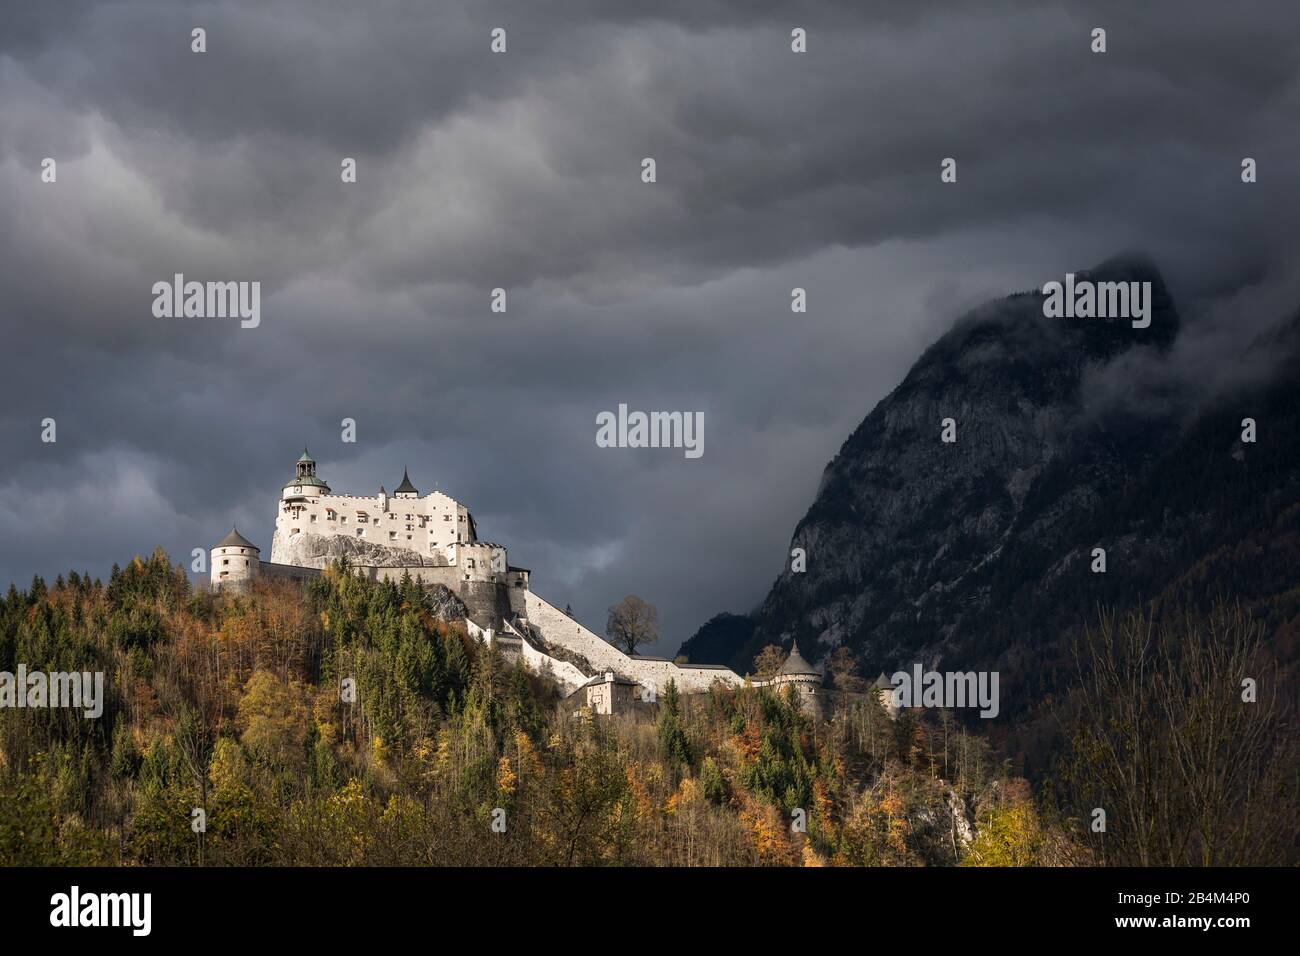 Die Festung Hohenwerfen im Salzachtal, Werfen, Pongau, Land Salzburg, Österreich, Oktober 2019 Stock Photo